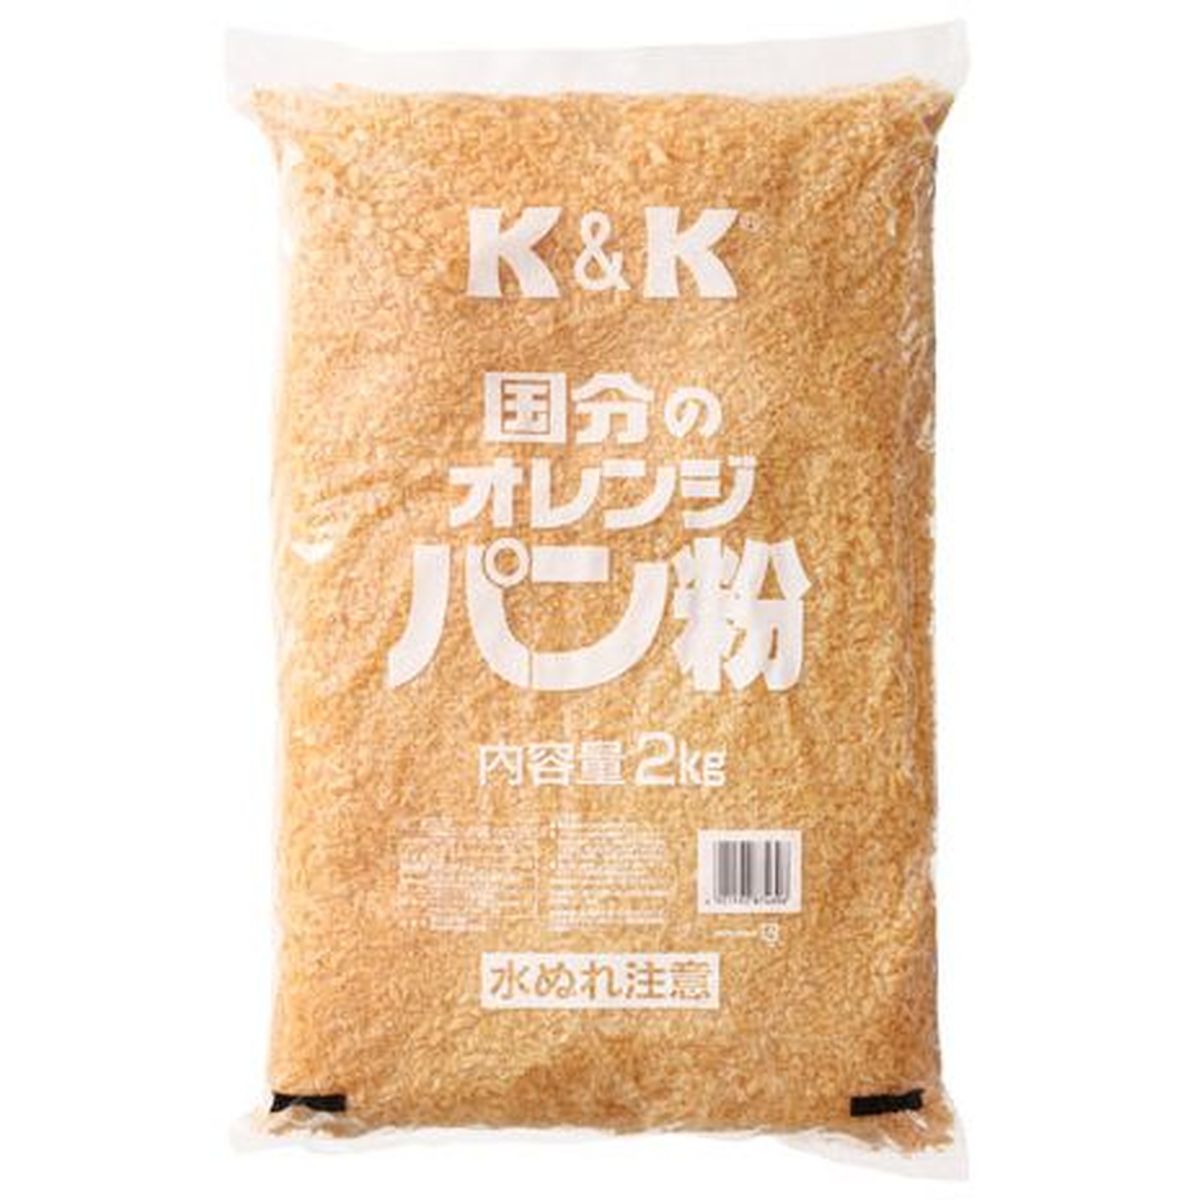 【5個入リ】KK オレンジパン粉 2Kg